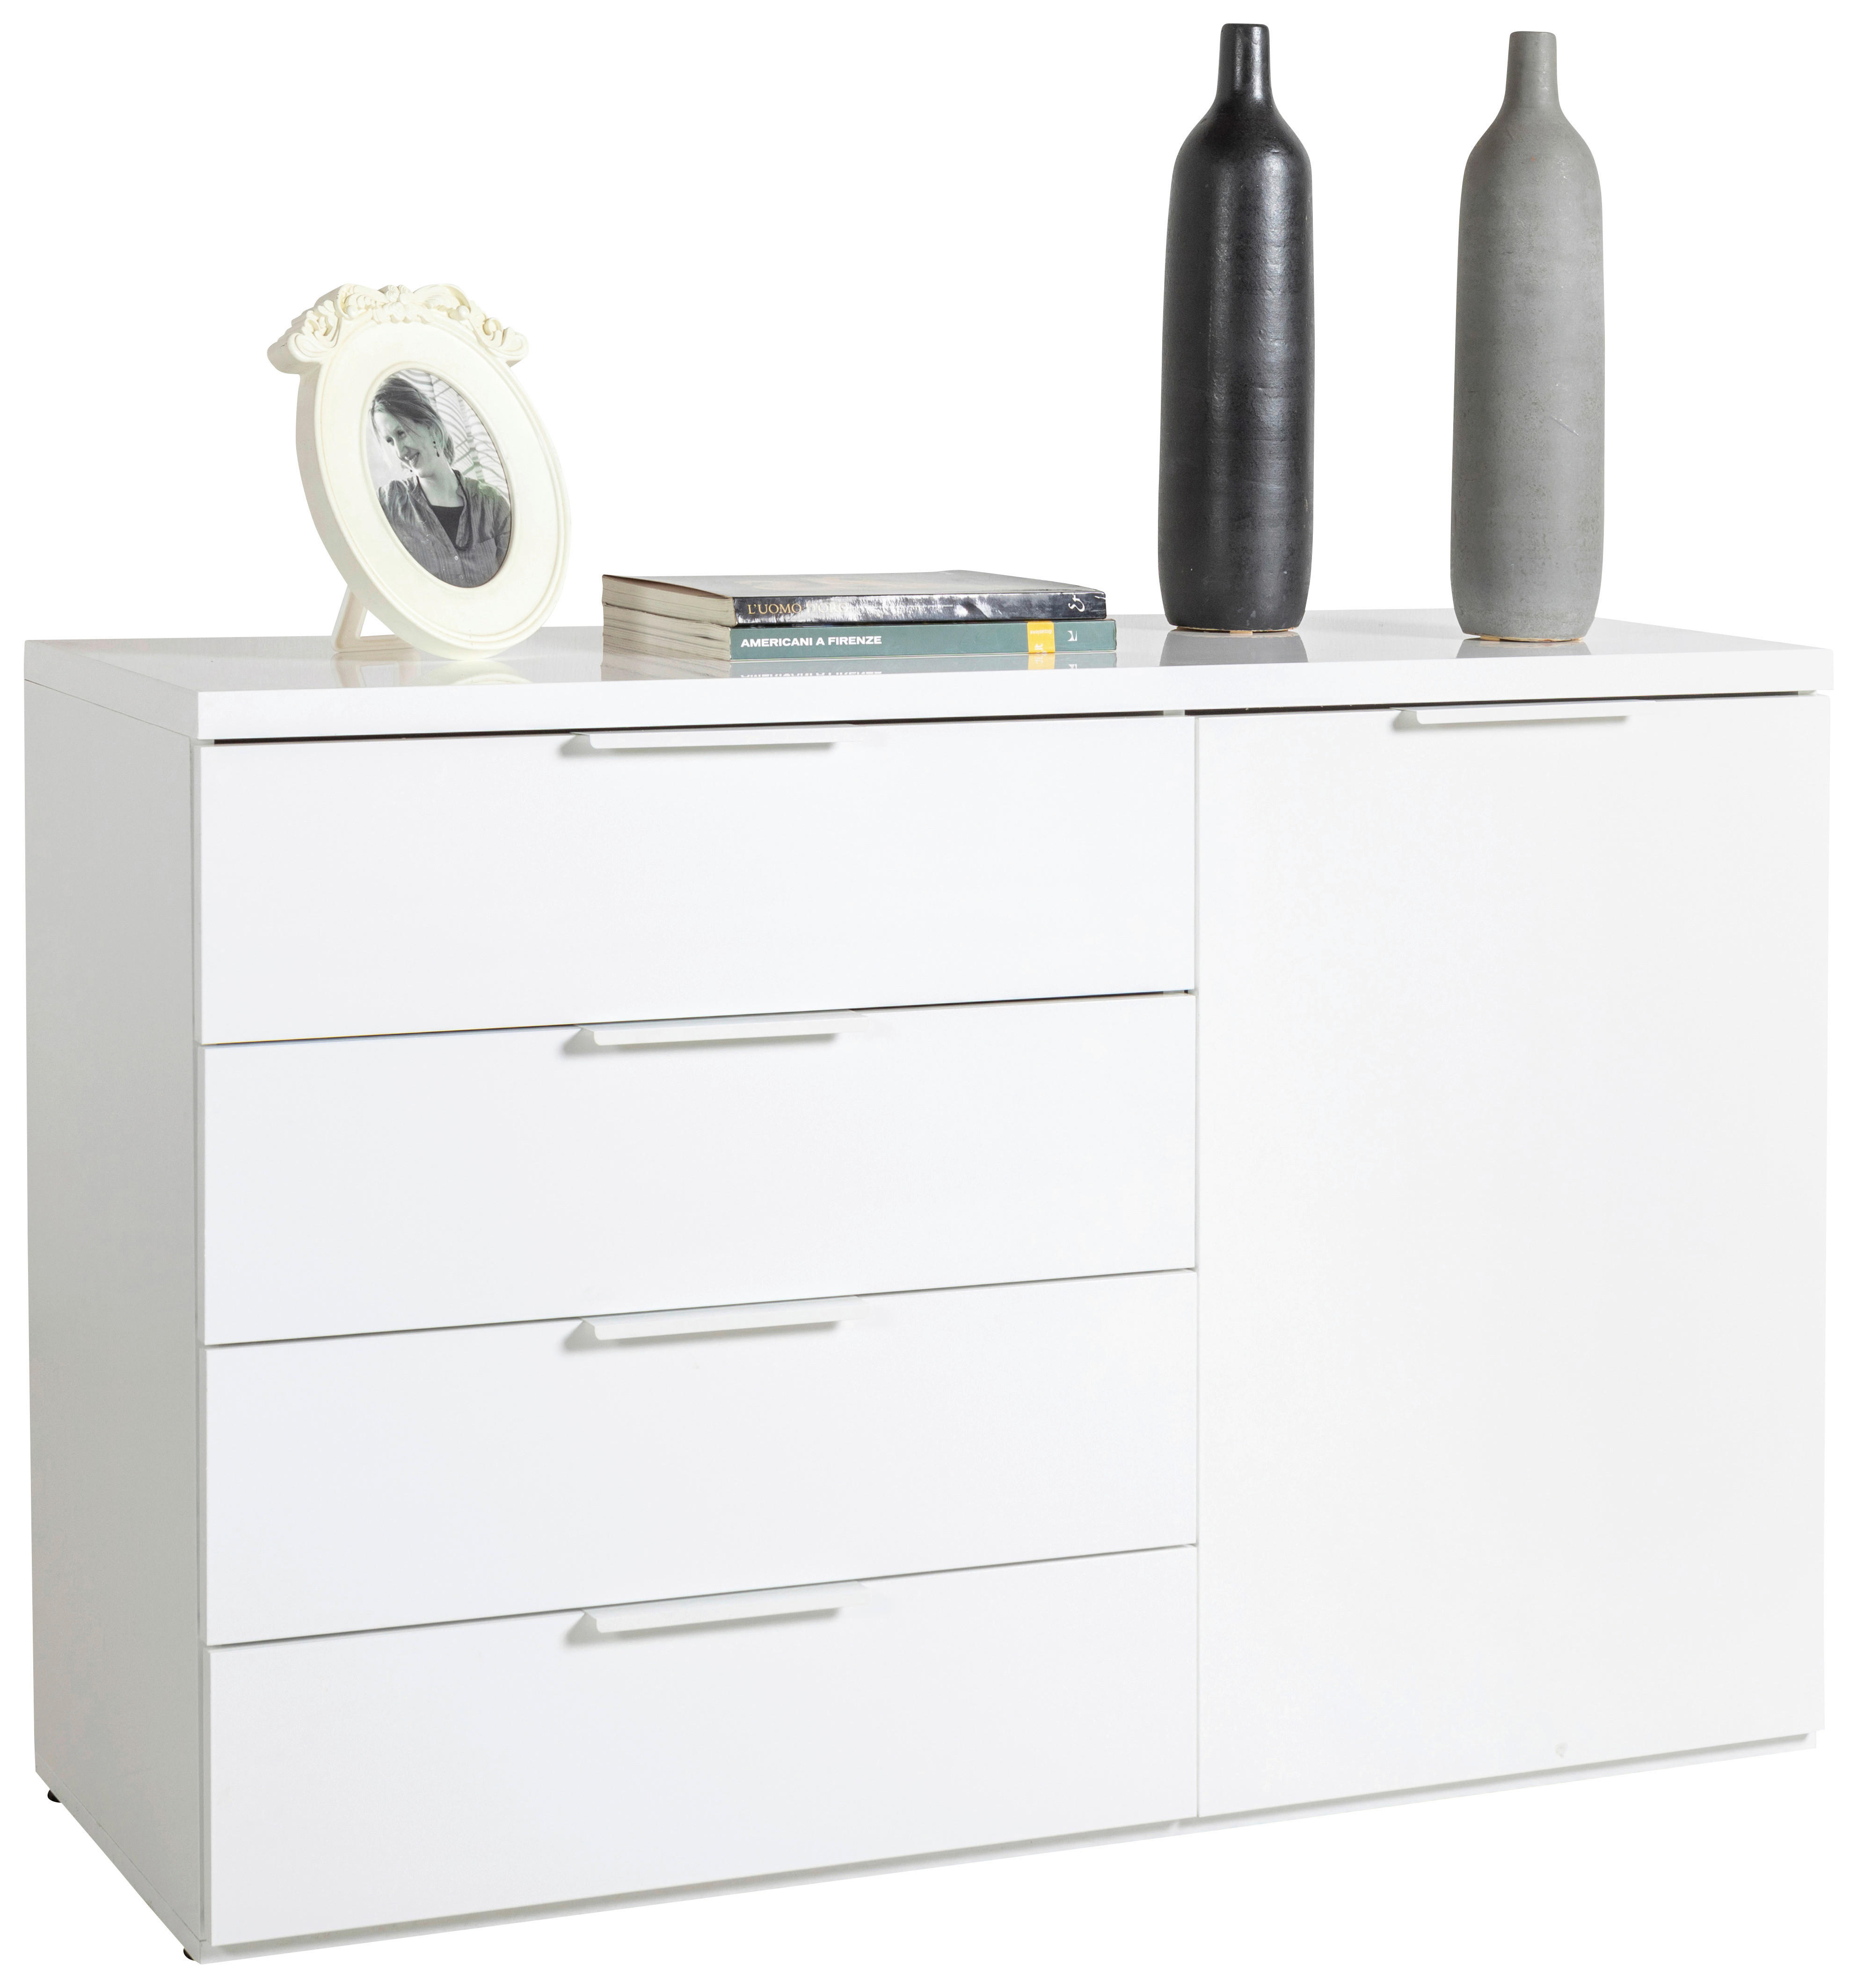 KOMODA   120/82/44,4 cm   bijela  - bijela/bijela visoki sjaj, Moderno, drvni materijal (120/82/44,4cm) - Modern Living